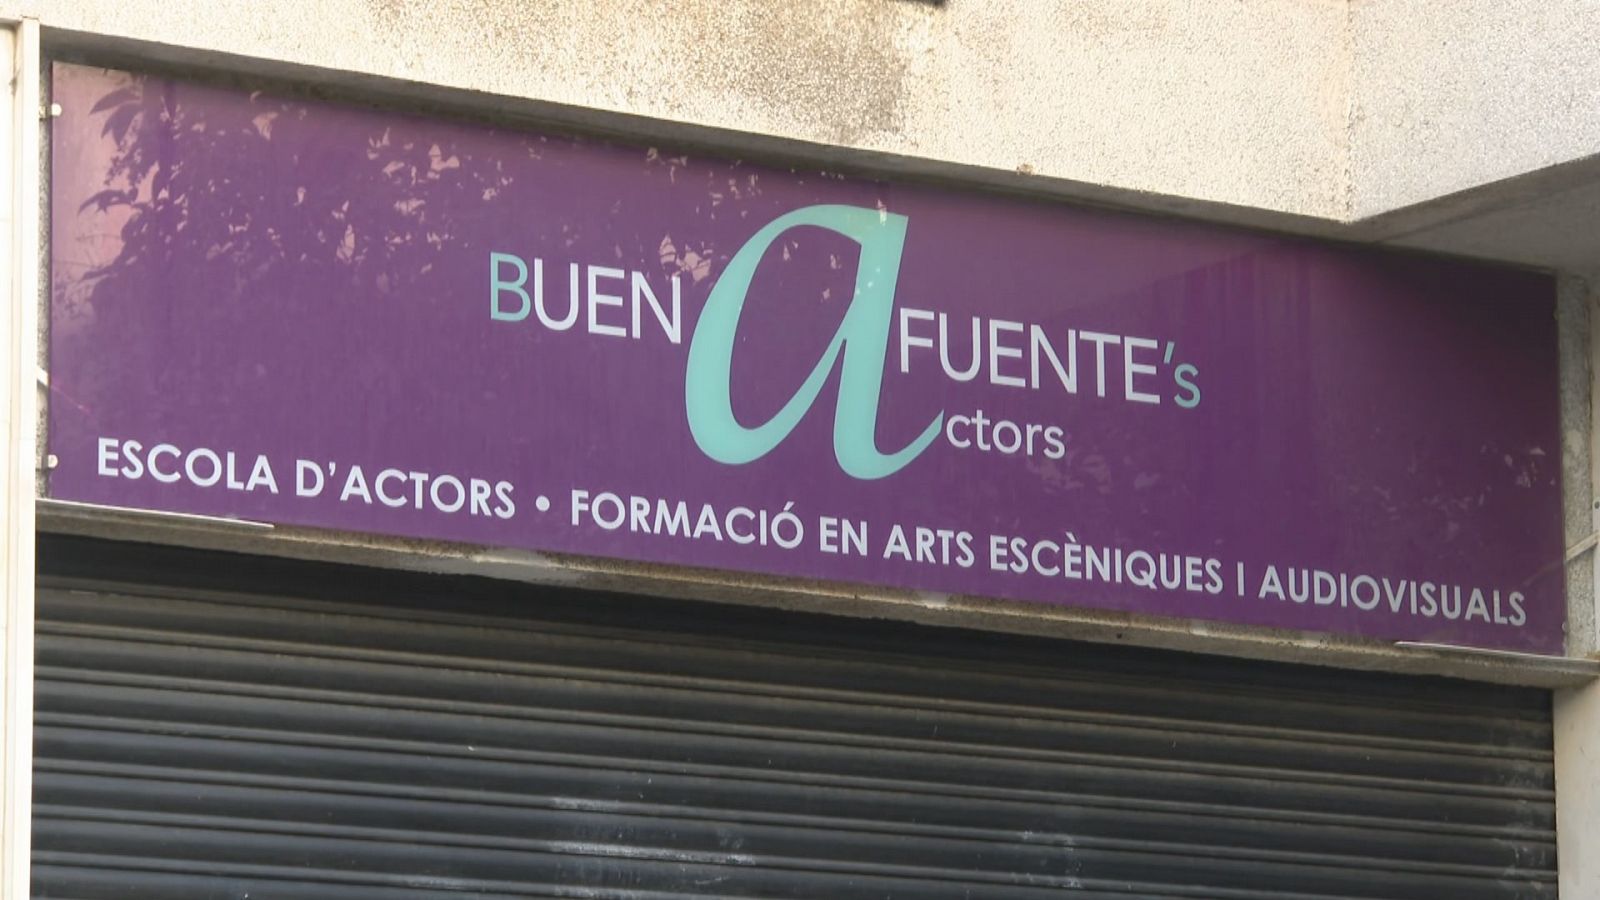 El professor impartia classes a l'escola Buenafuente's actors